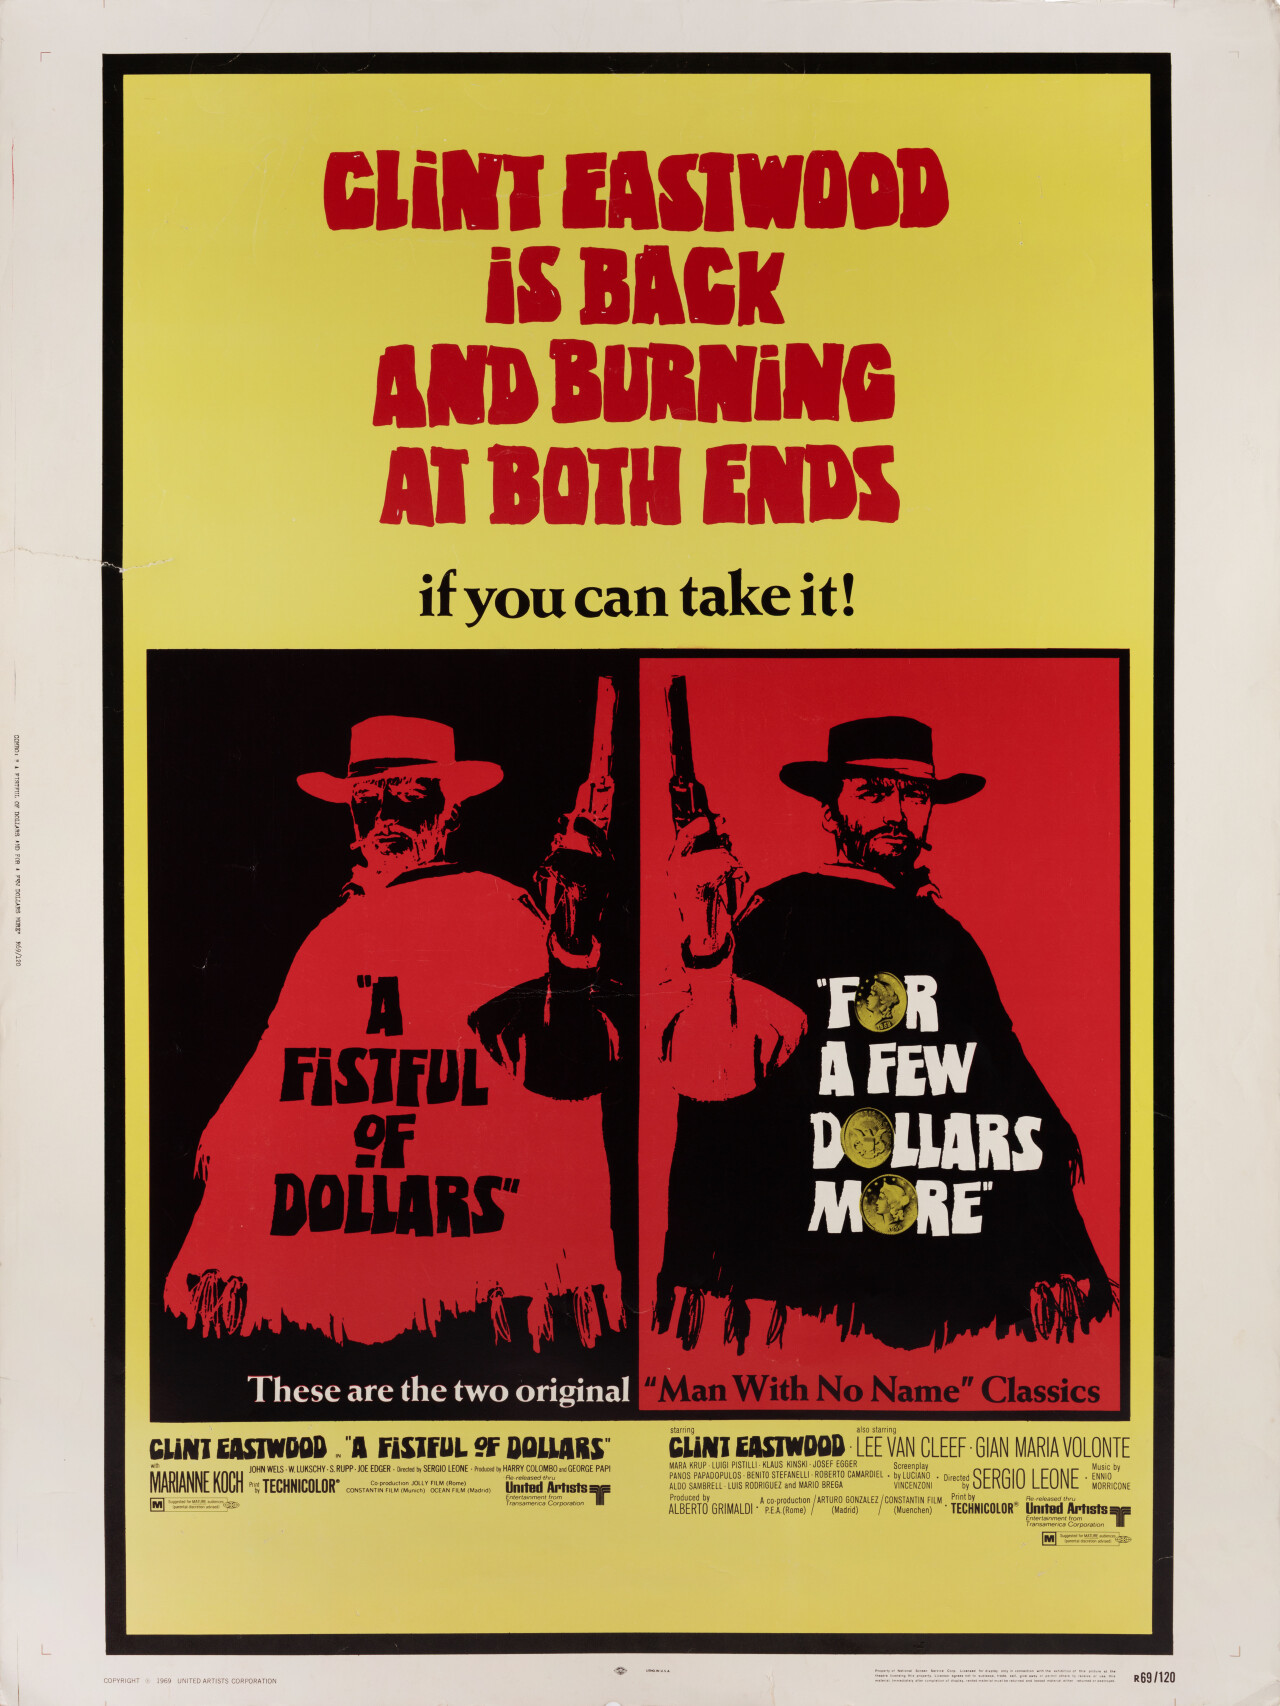 За пригоршню долларов (A Fistful of Dollars, 1964), режиссёр Серджио Леоне, американский постер к фильму (графический дизайн, 1969 год)